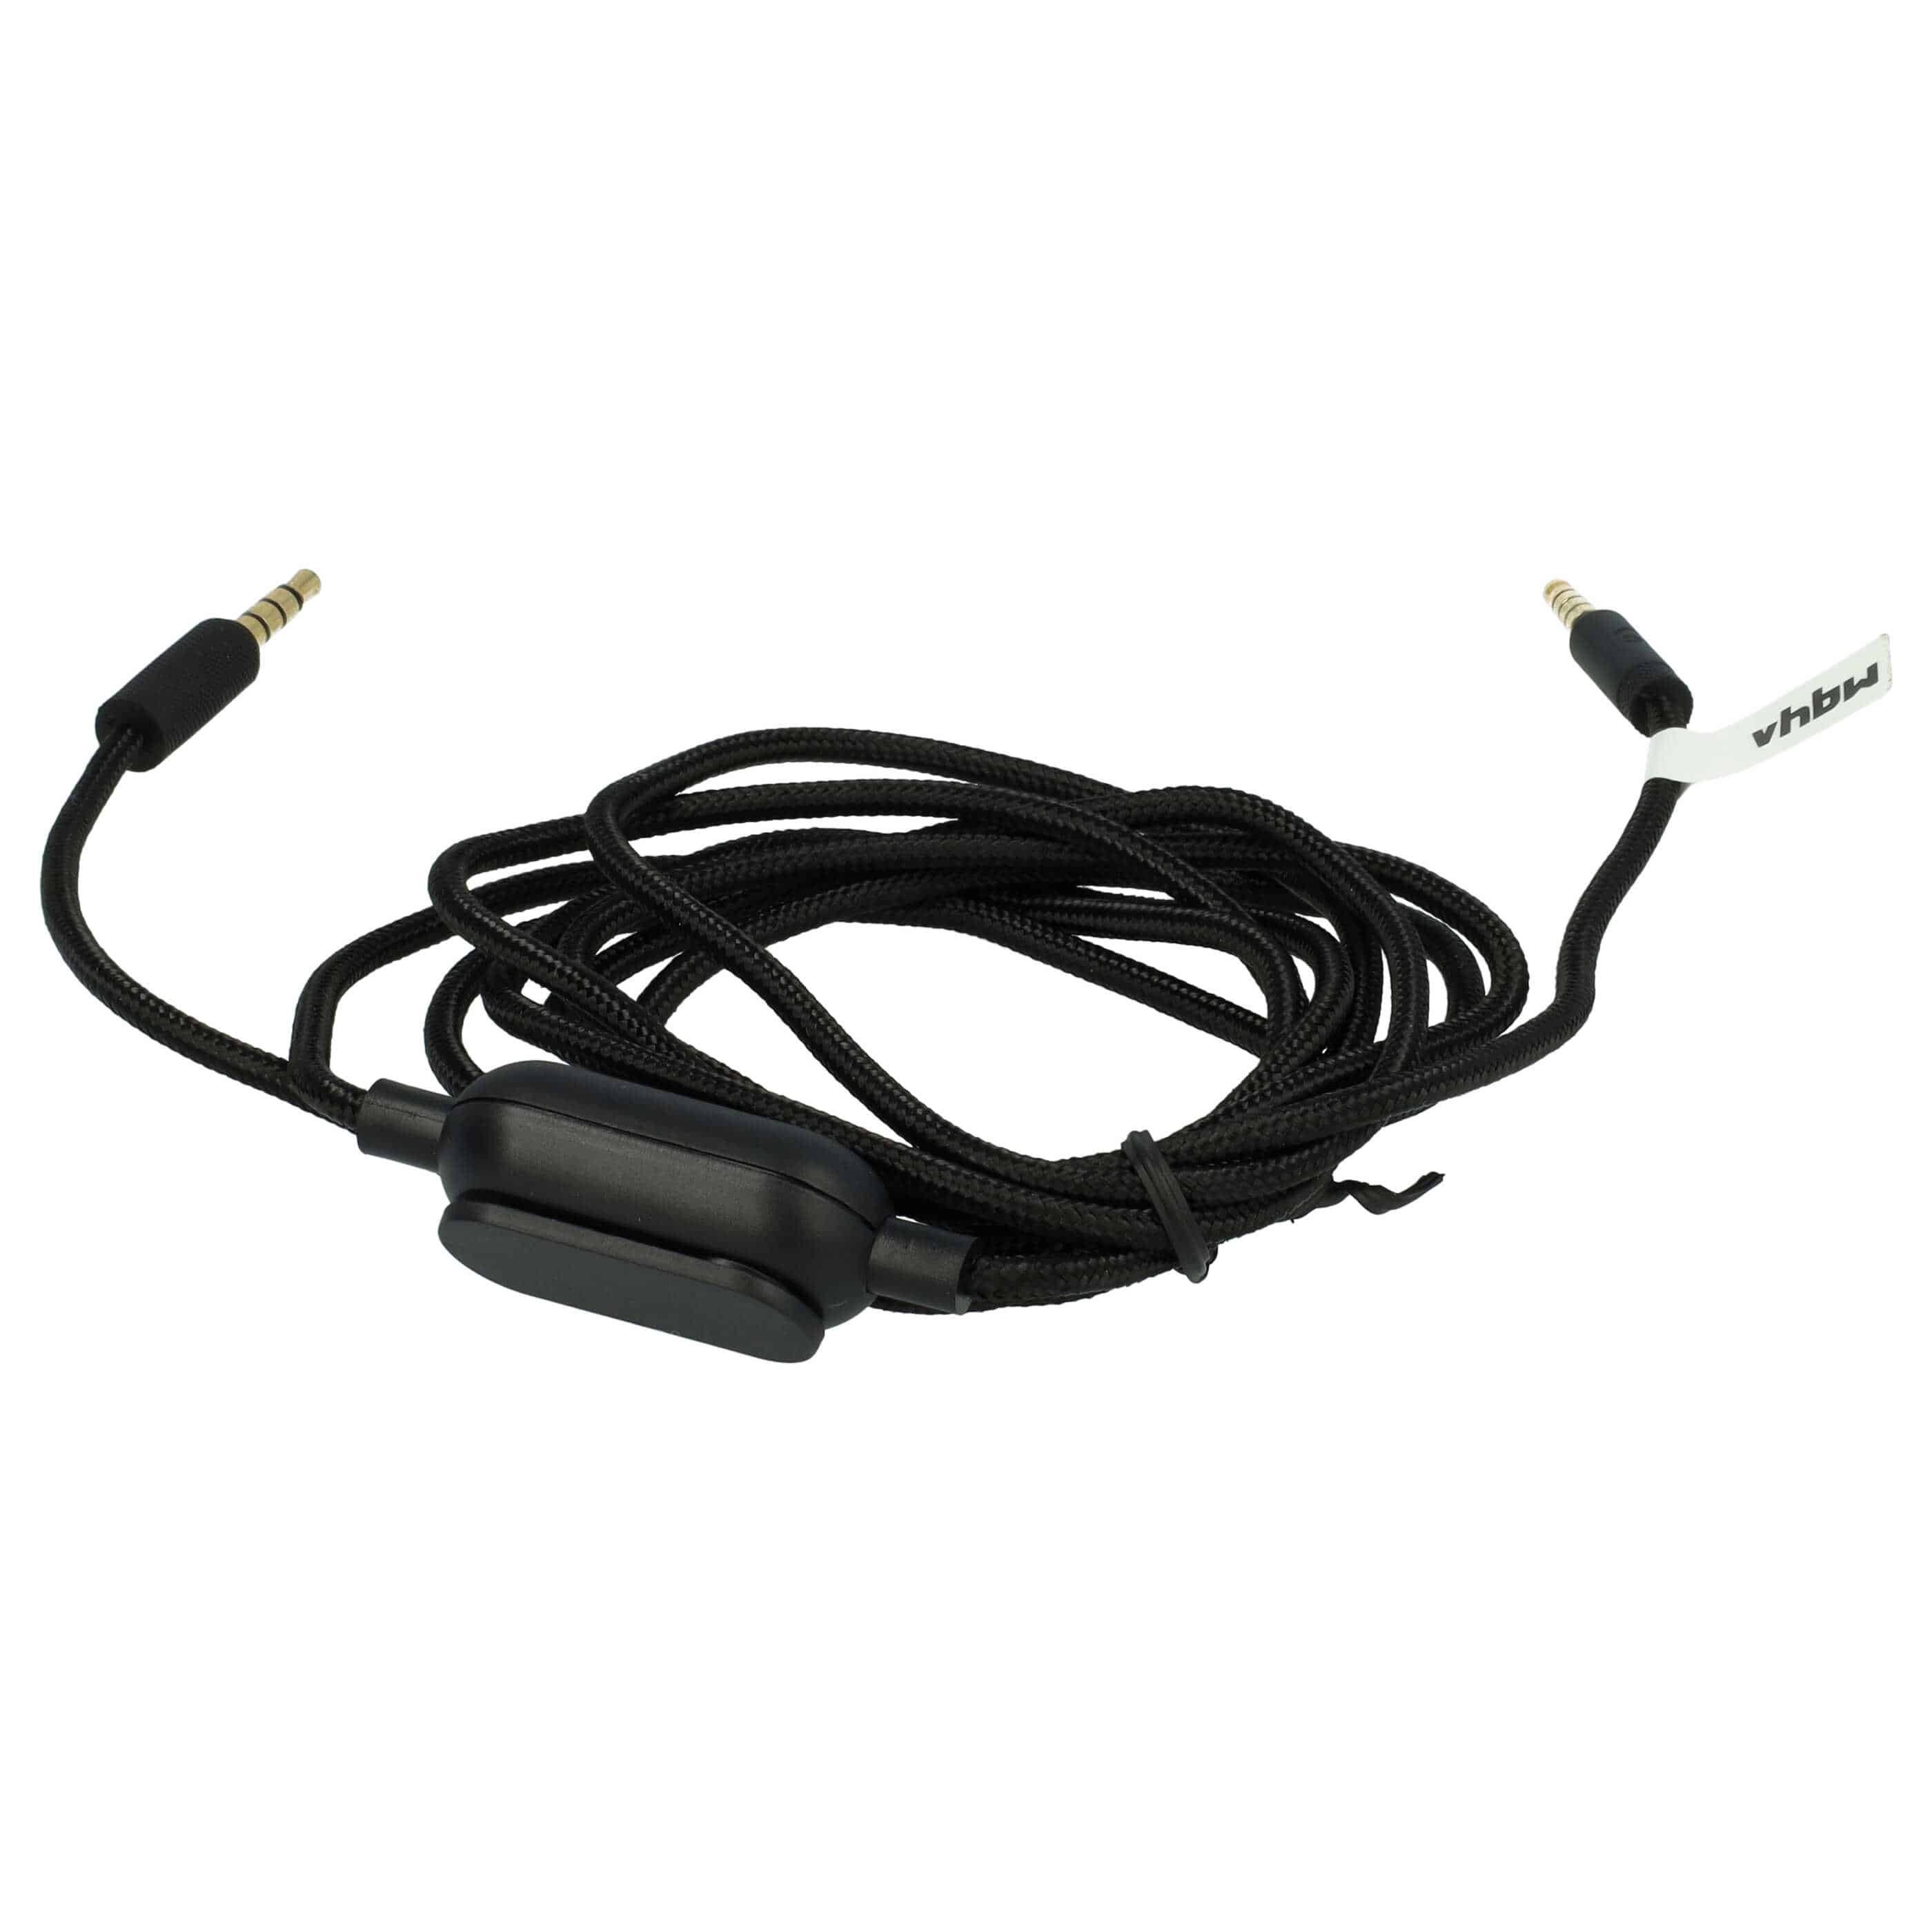 Kopfhörer Kabel passend für Logitech G Pro, G Pro X, G233, G433 , 200 cm, schwarz